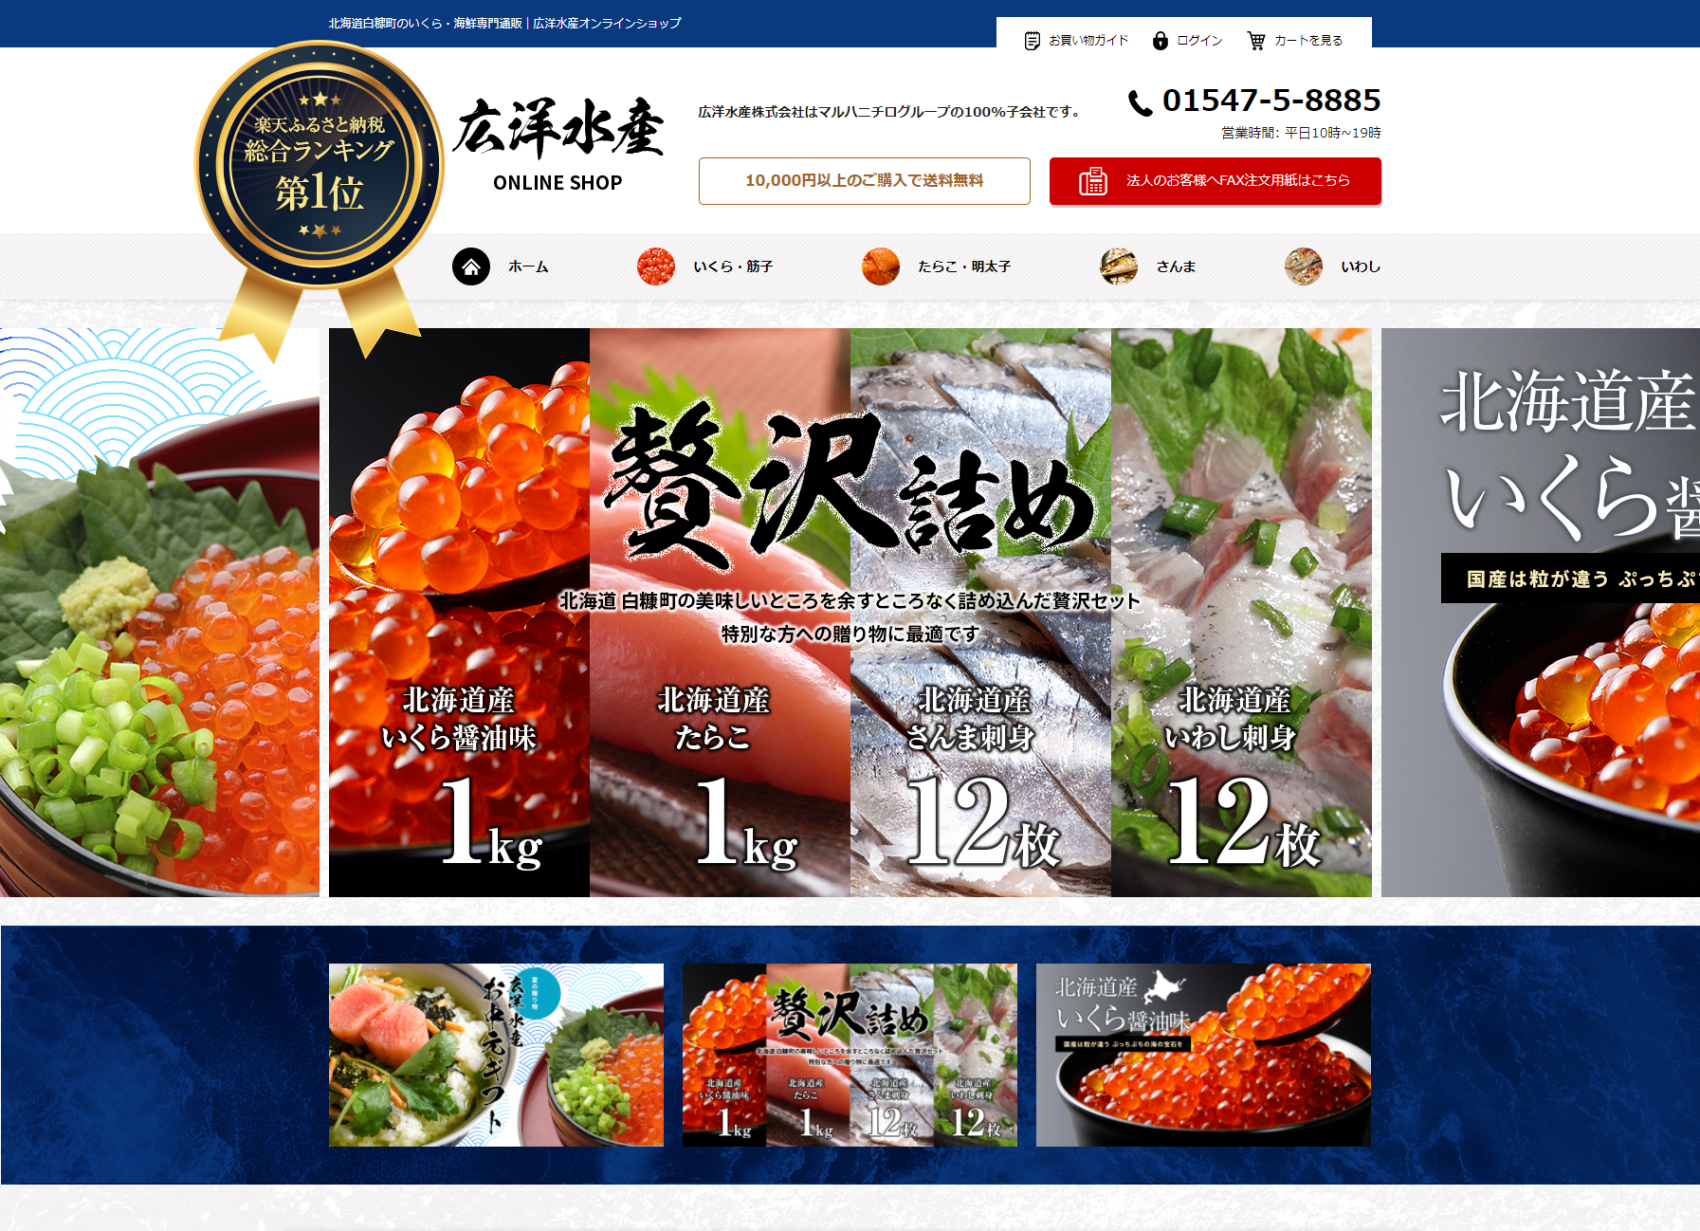 フードロス削減を目指す八百屋と神戸新聞販売店が提携、地元の朝採れ野菜の新宅配サービス開始！